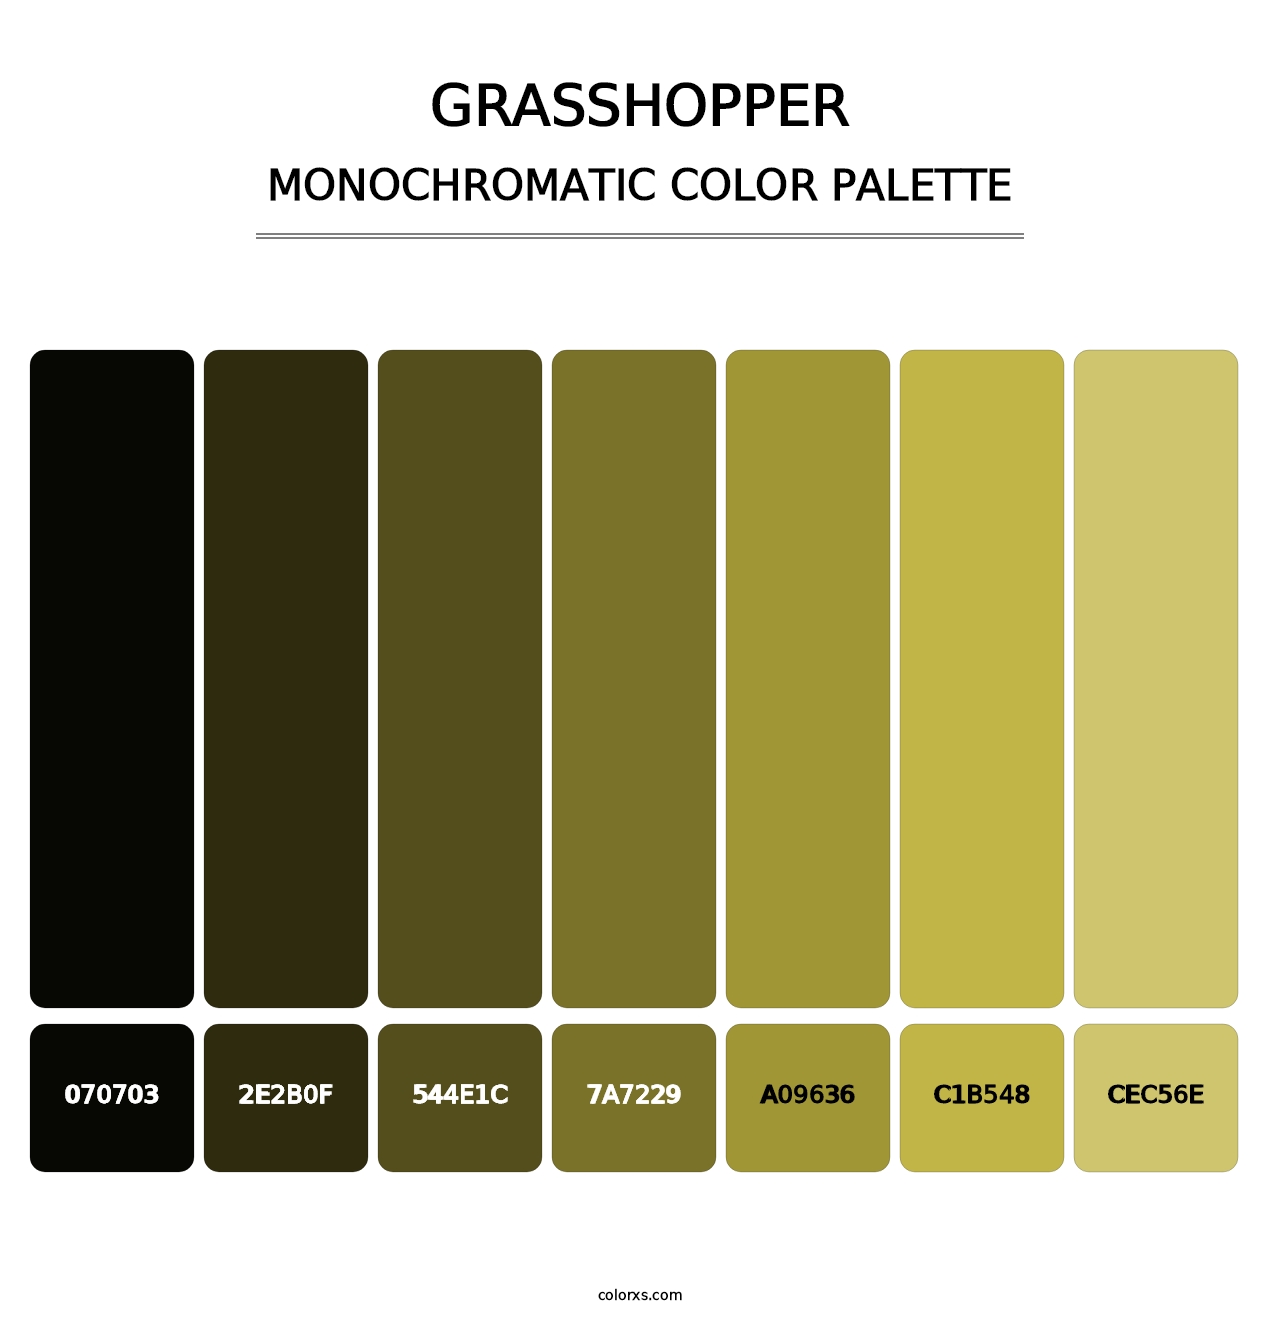 Grasshopper - Monochromatic Color Palette